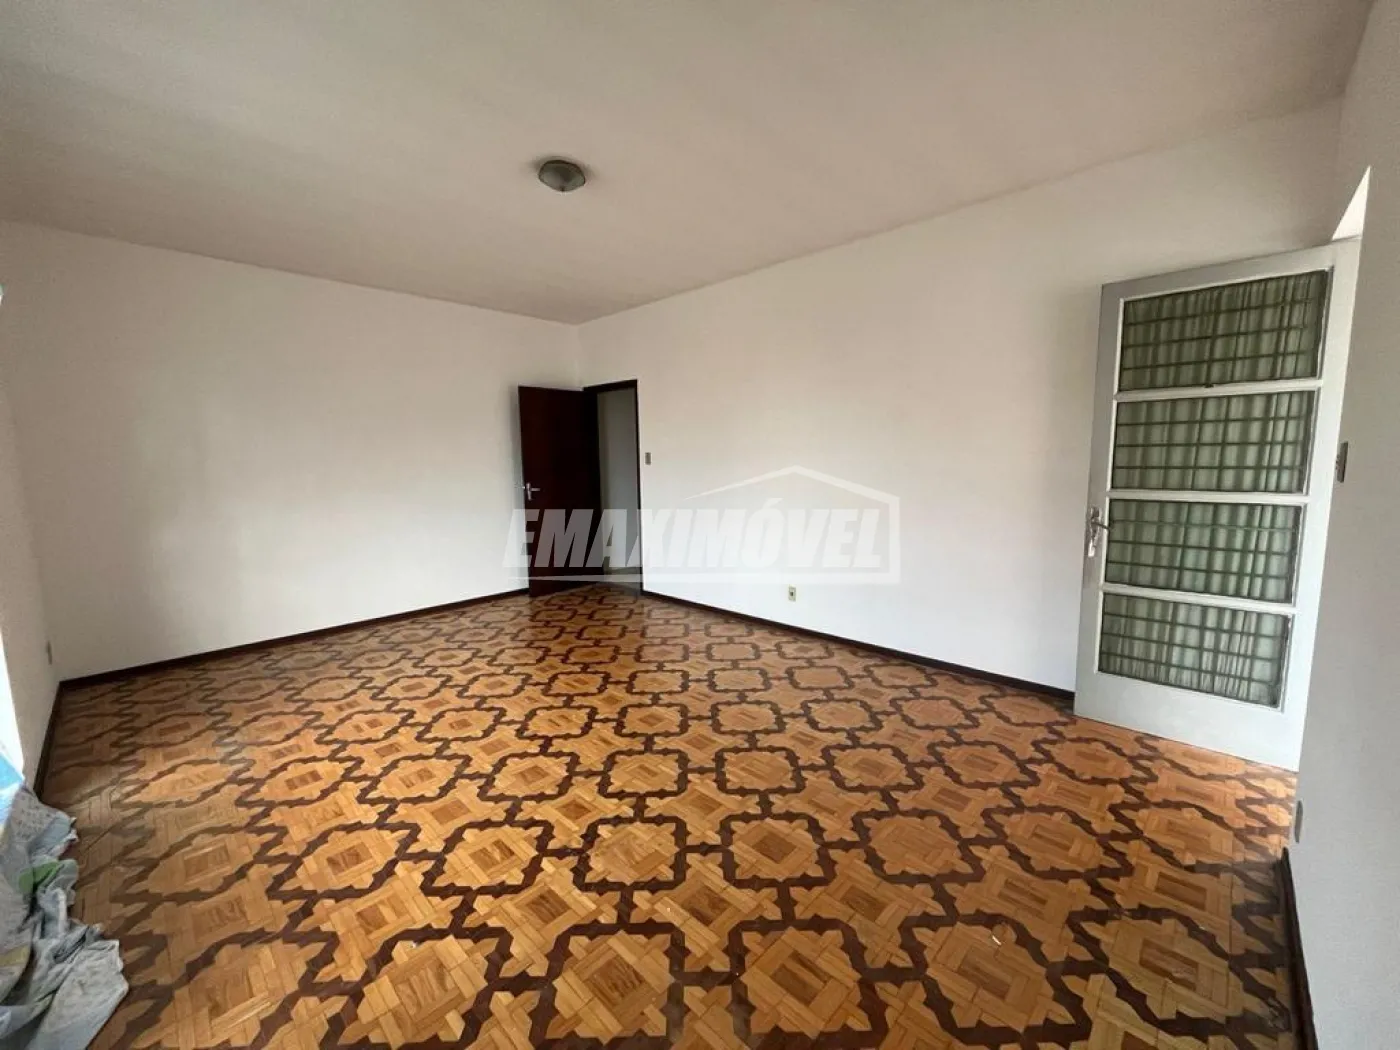 Alugar Casa / em Bairros em Sorocaba R$ 3.000,00 - Foto 5